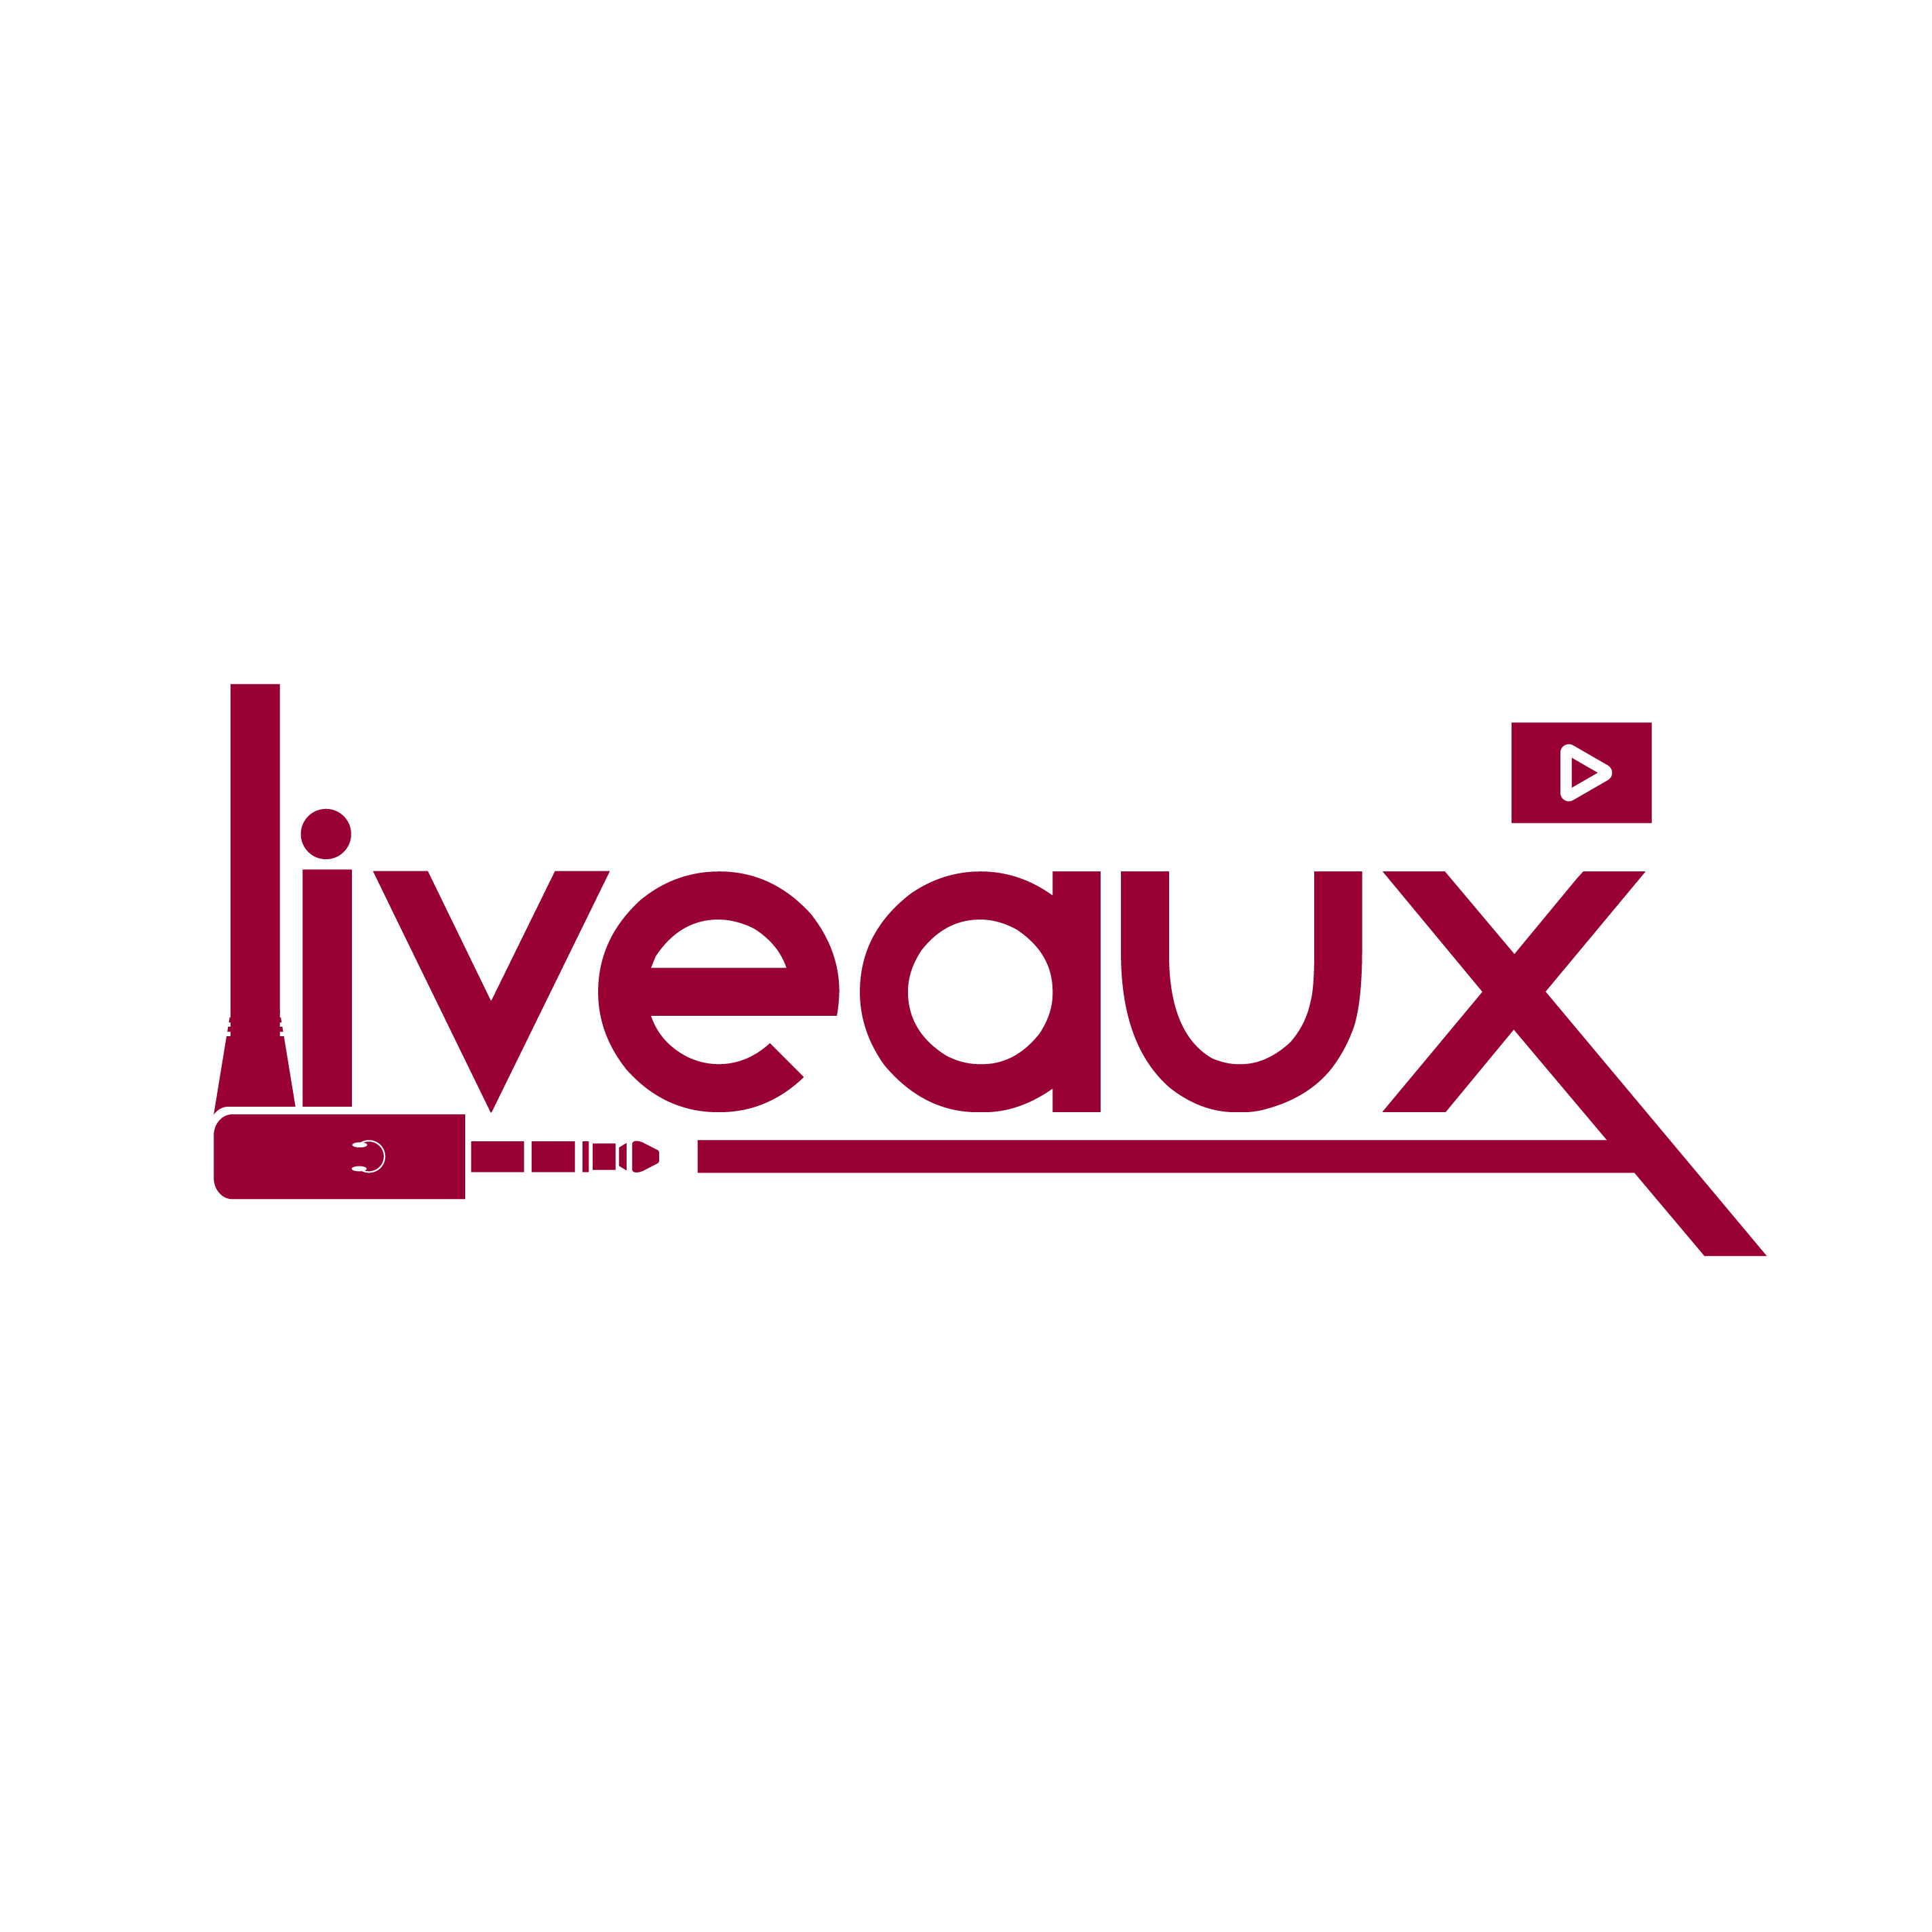 Liveaux.com